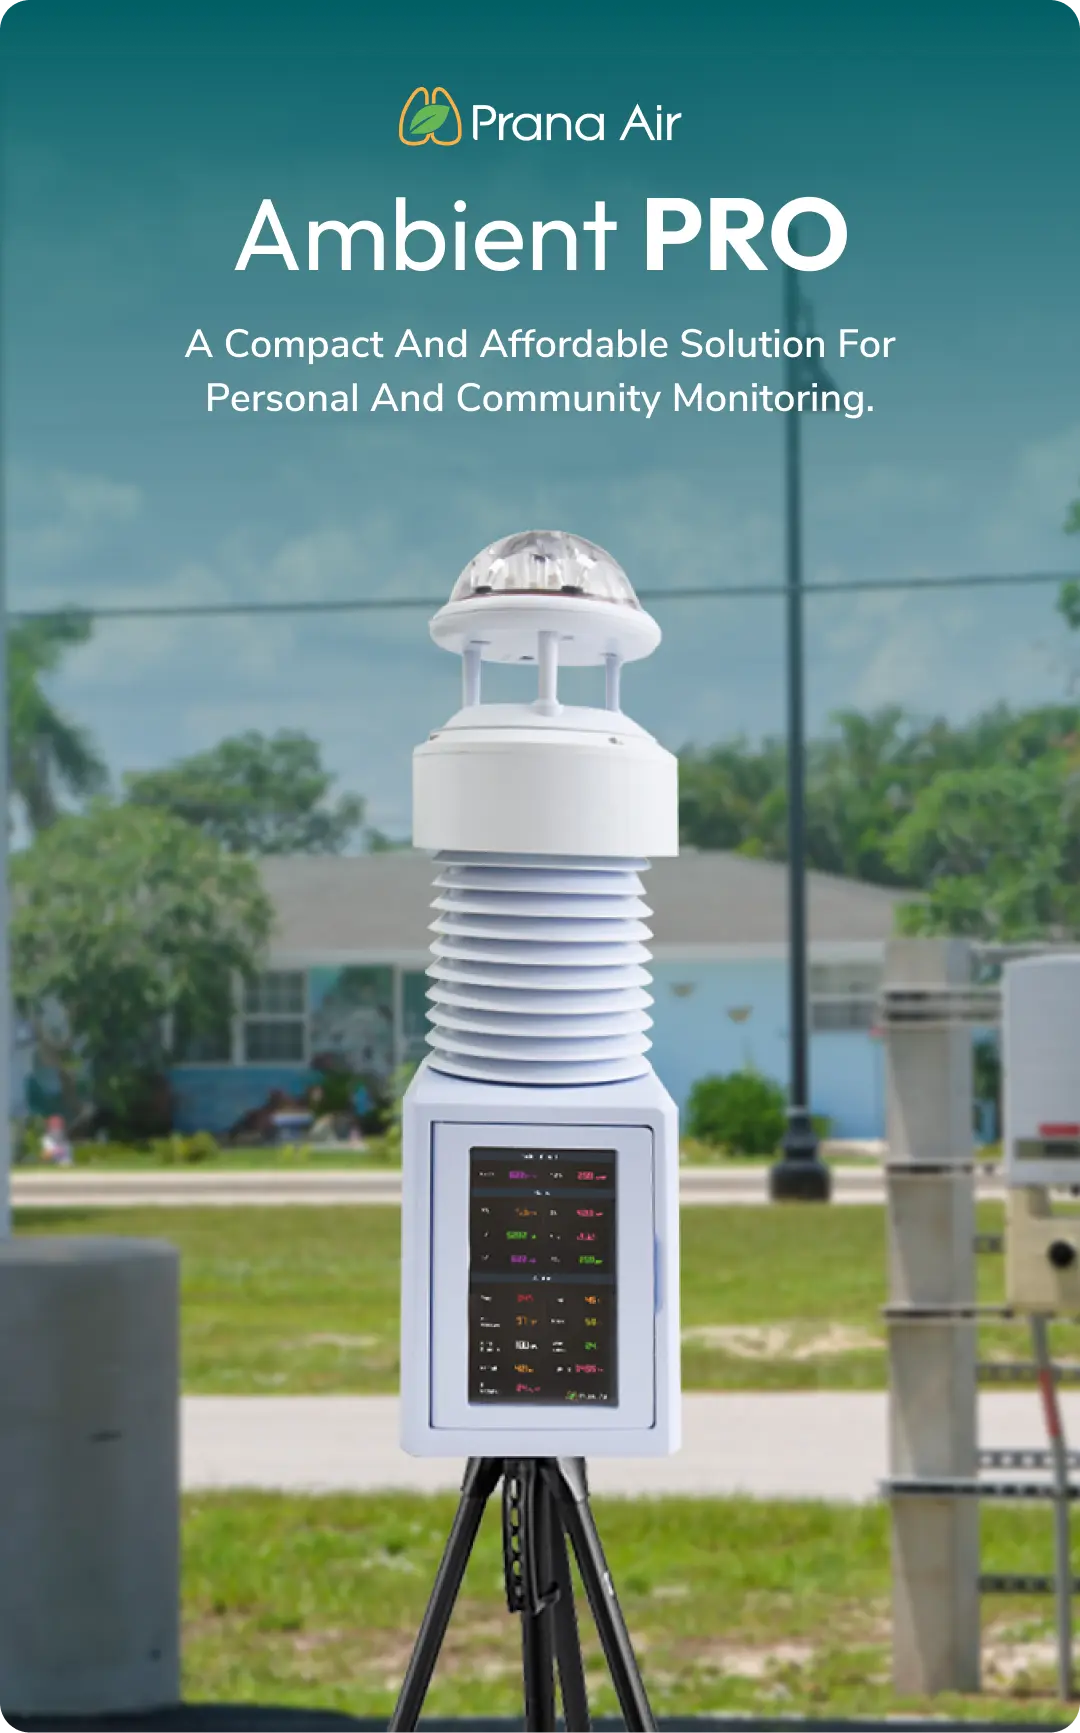 prana air caaqms ambient air quality monitor